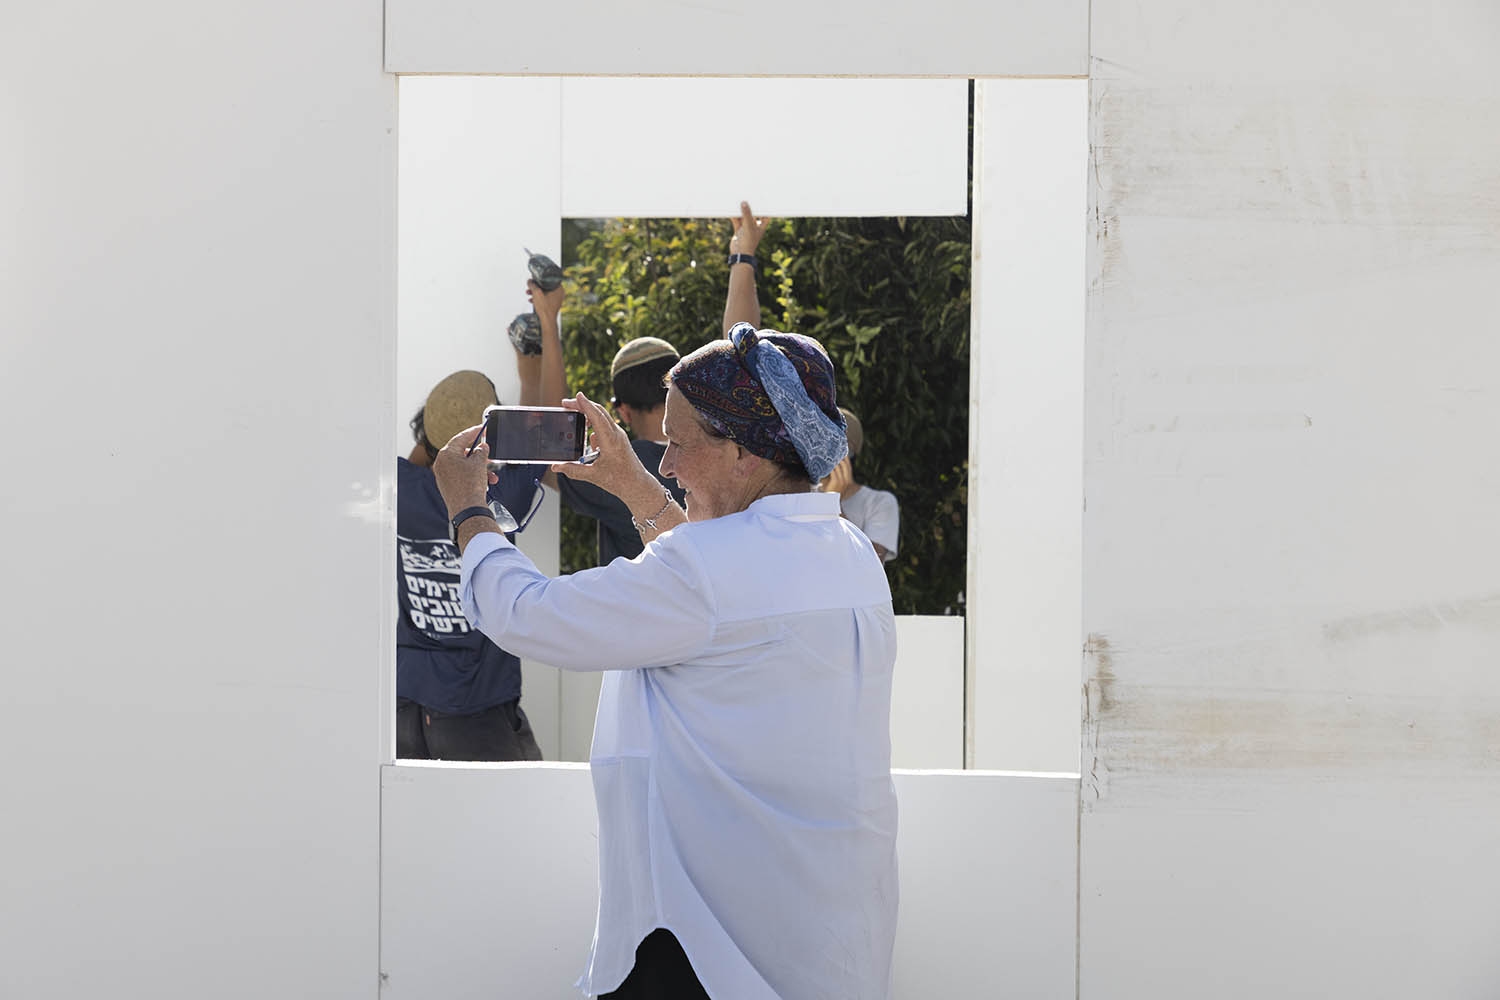 דניאלה וייס במהלך הקמת ״מאחז״ בכיכר הבימה בתל אביב, 12 ביולי 2022 (צילום: אורן זיו)